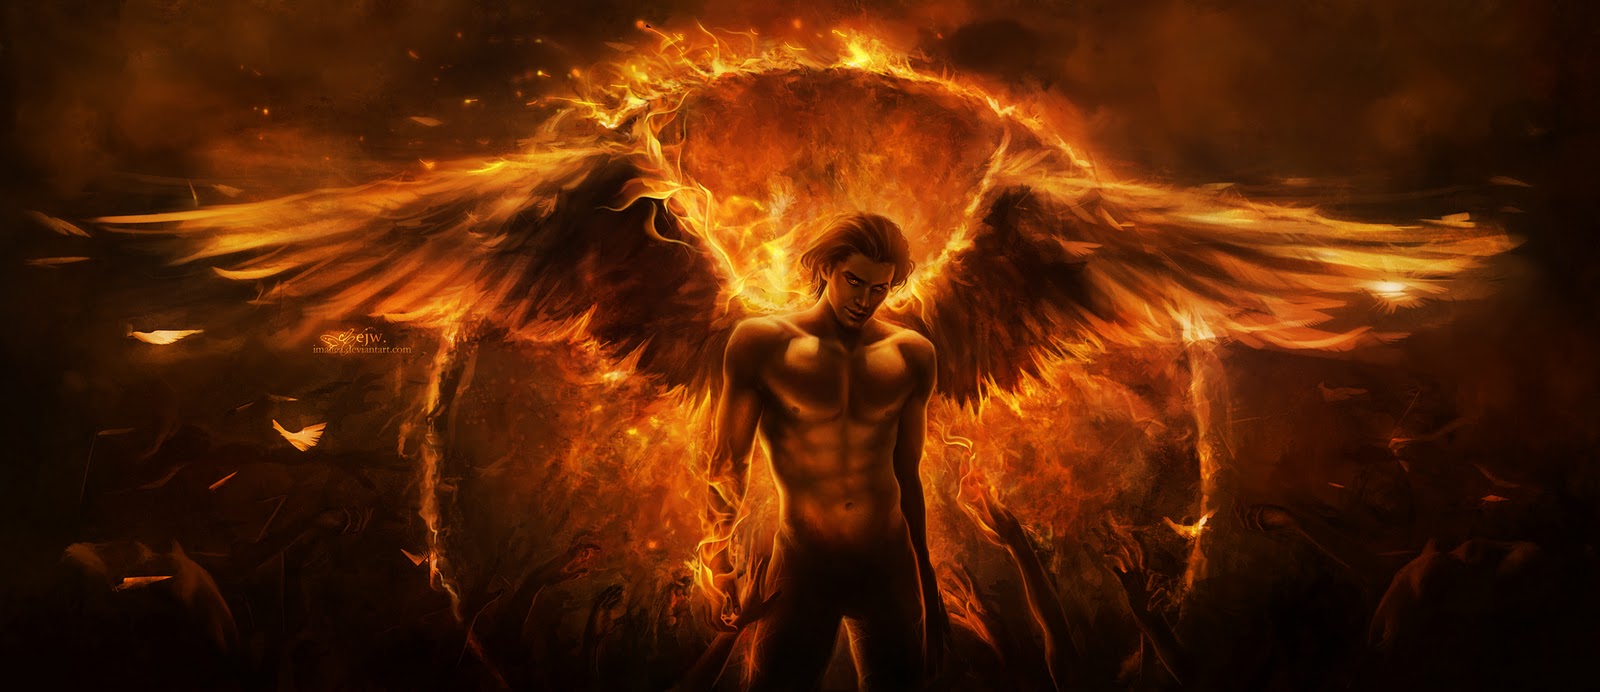 Fallen Angel Stunning Beautiful Male With Fiery Wings In Hell